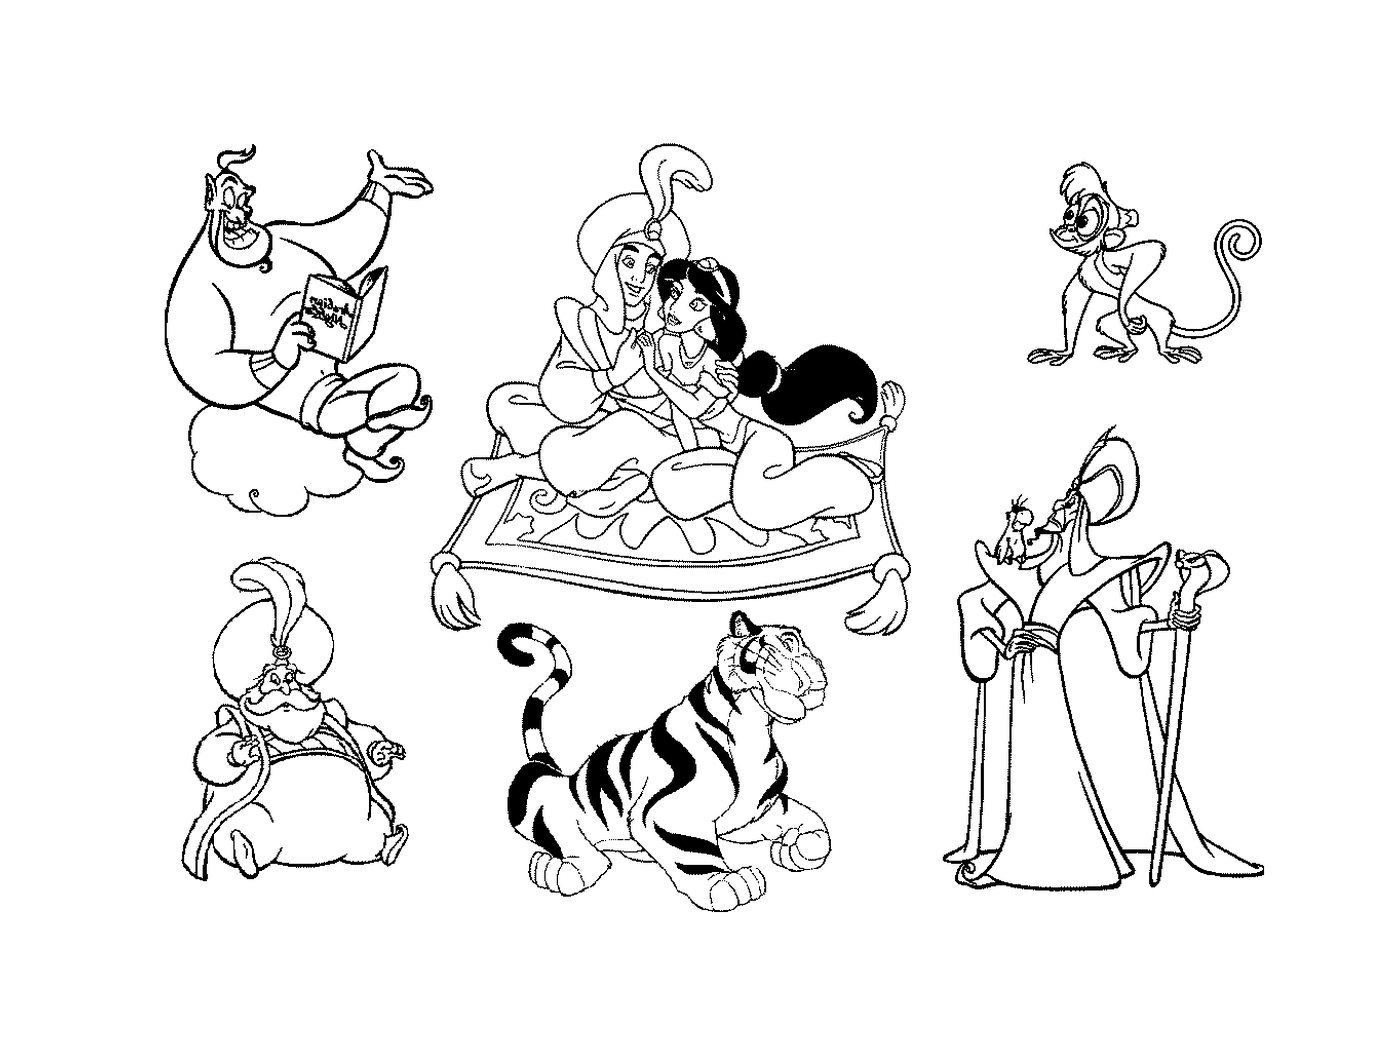  Un grupo de personajes de dibujos animados 